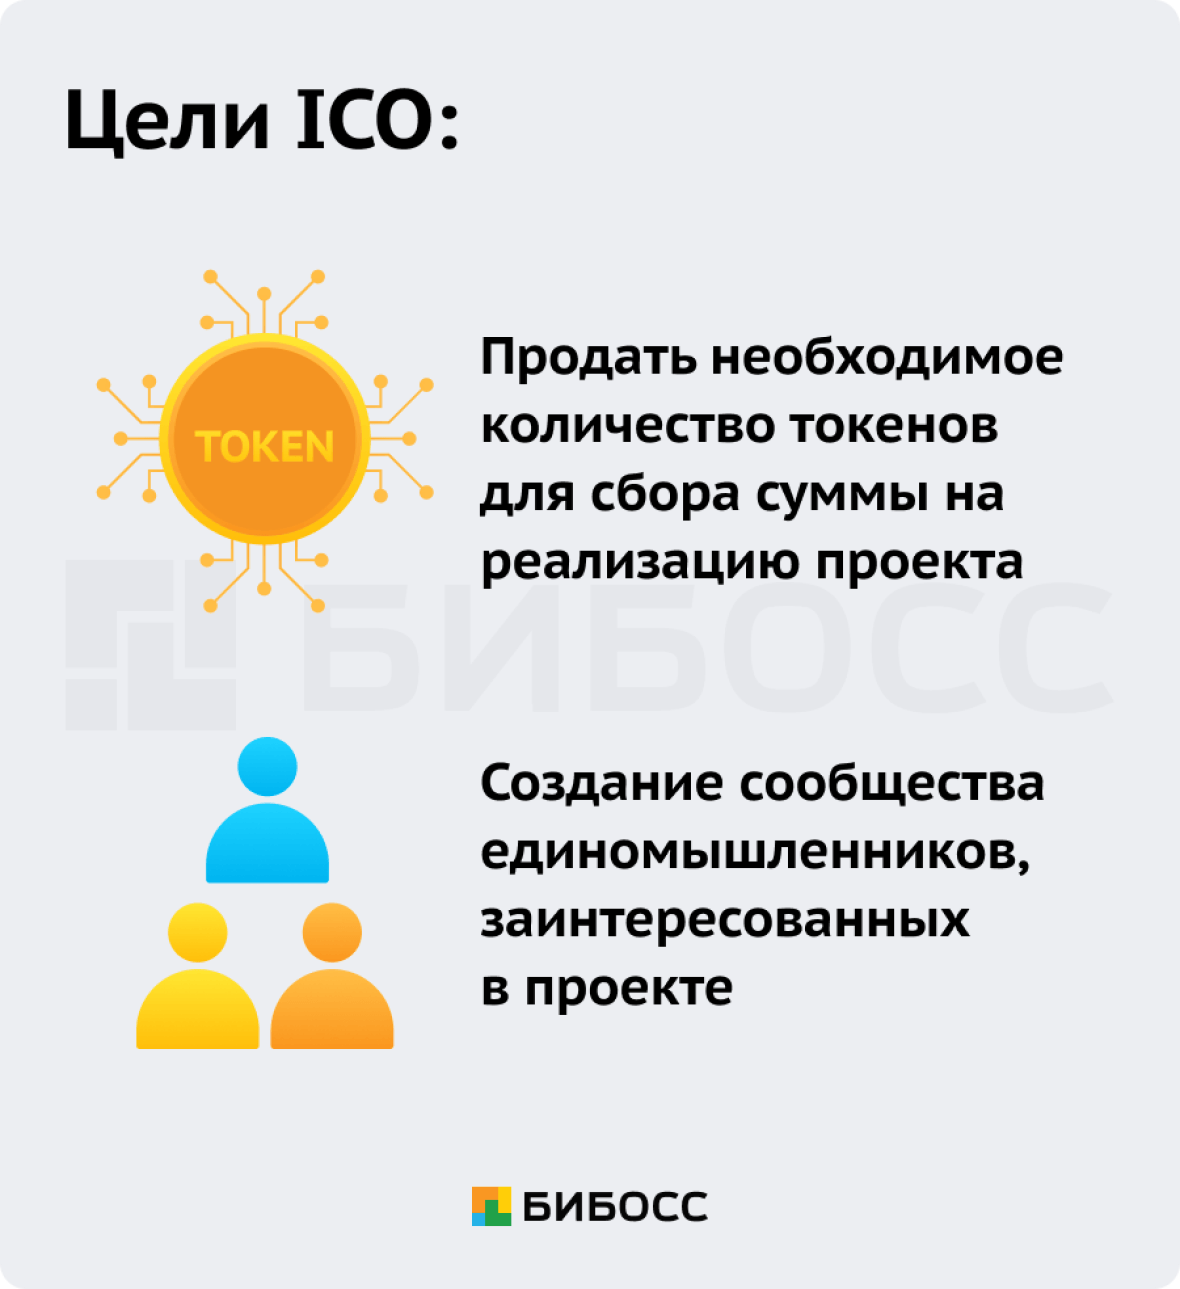 Цели ICO